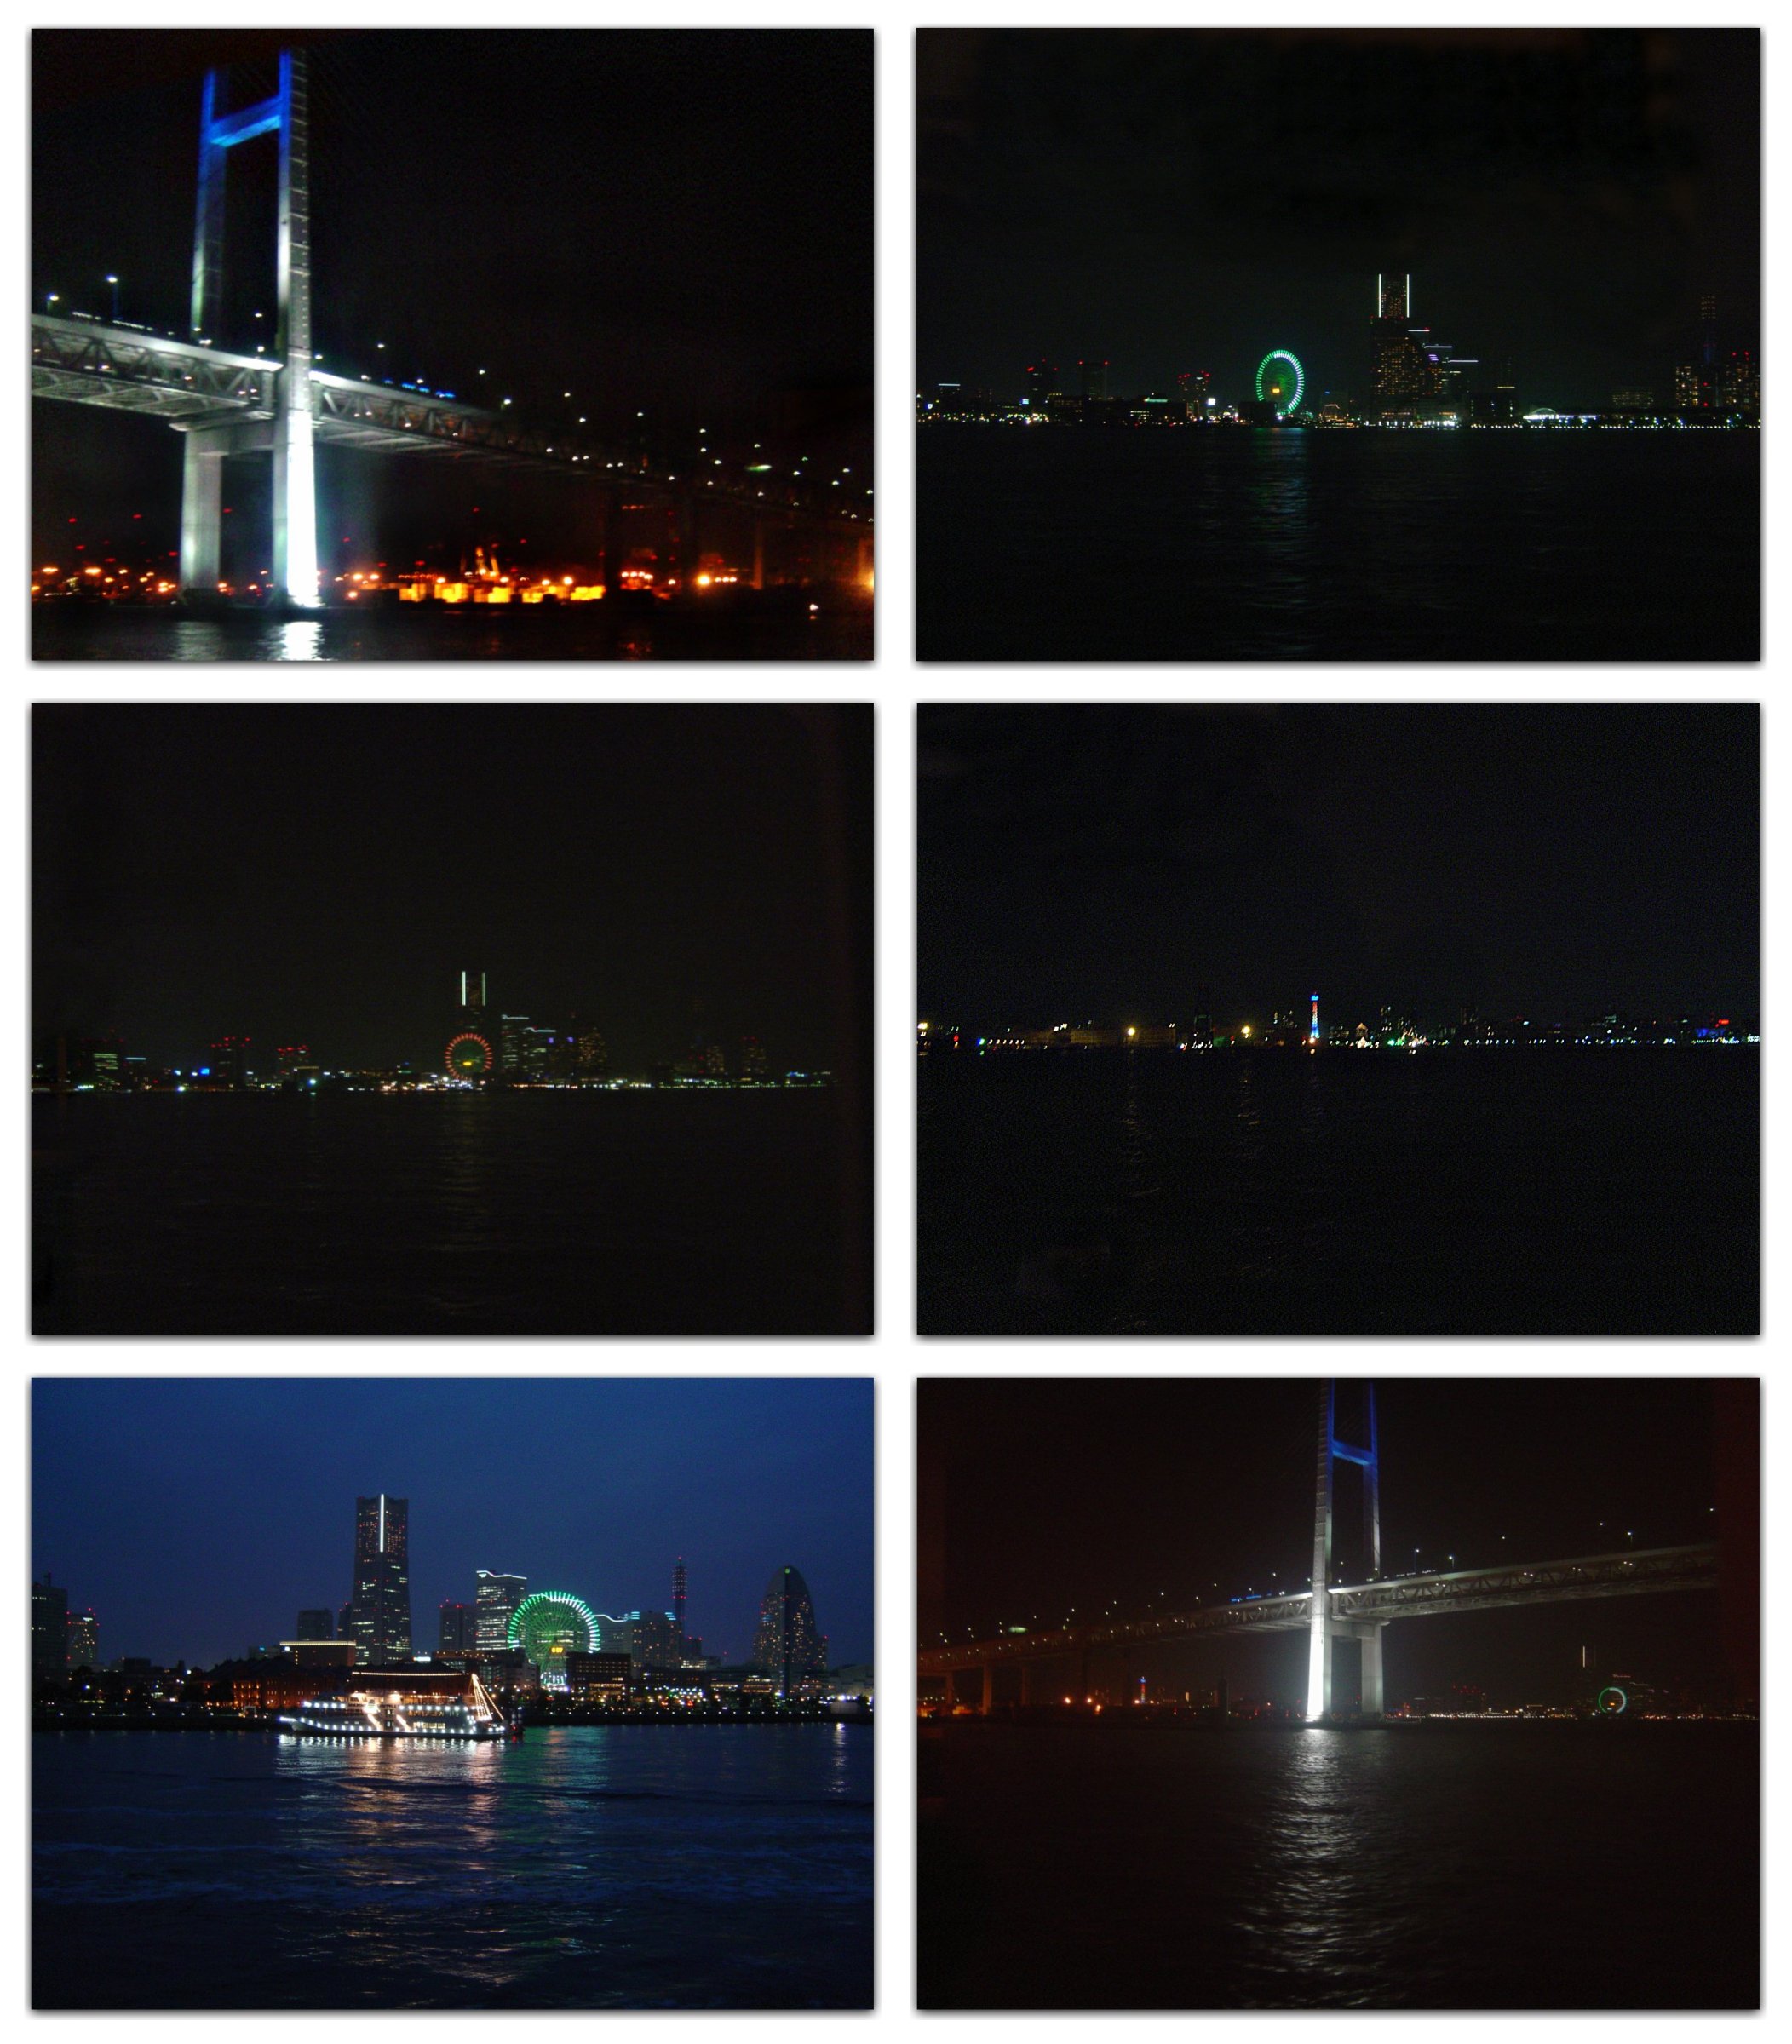 Nighttime views of Yokohama (Japan)